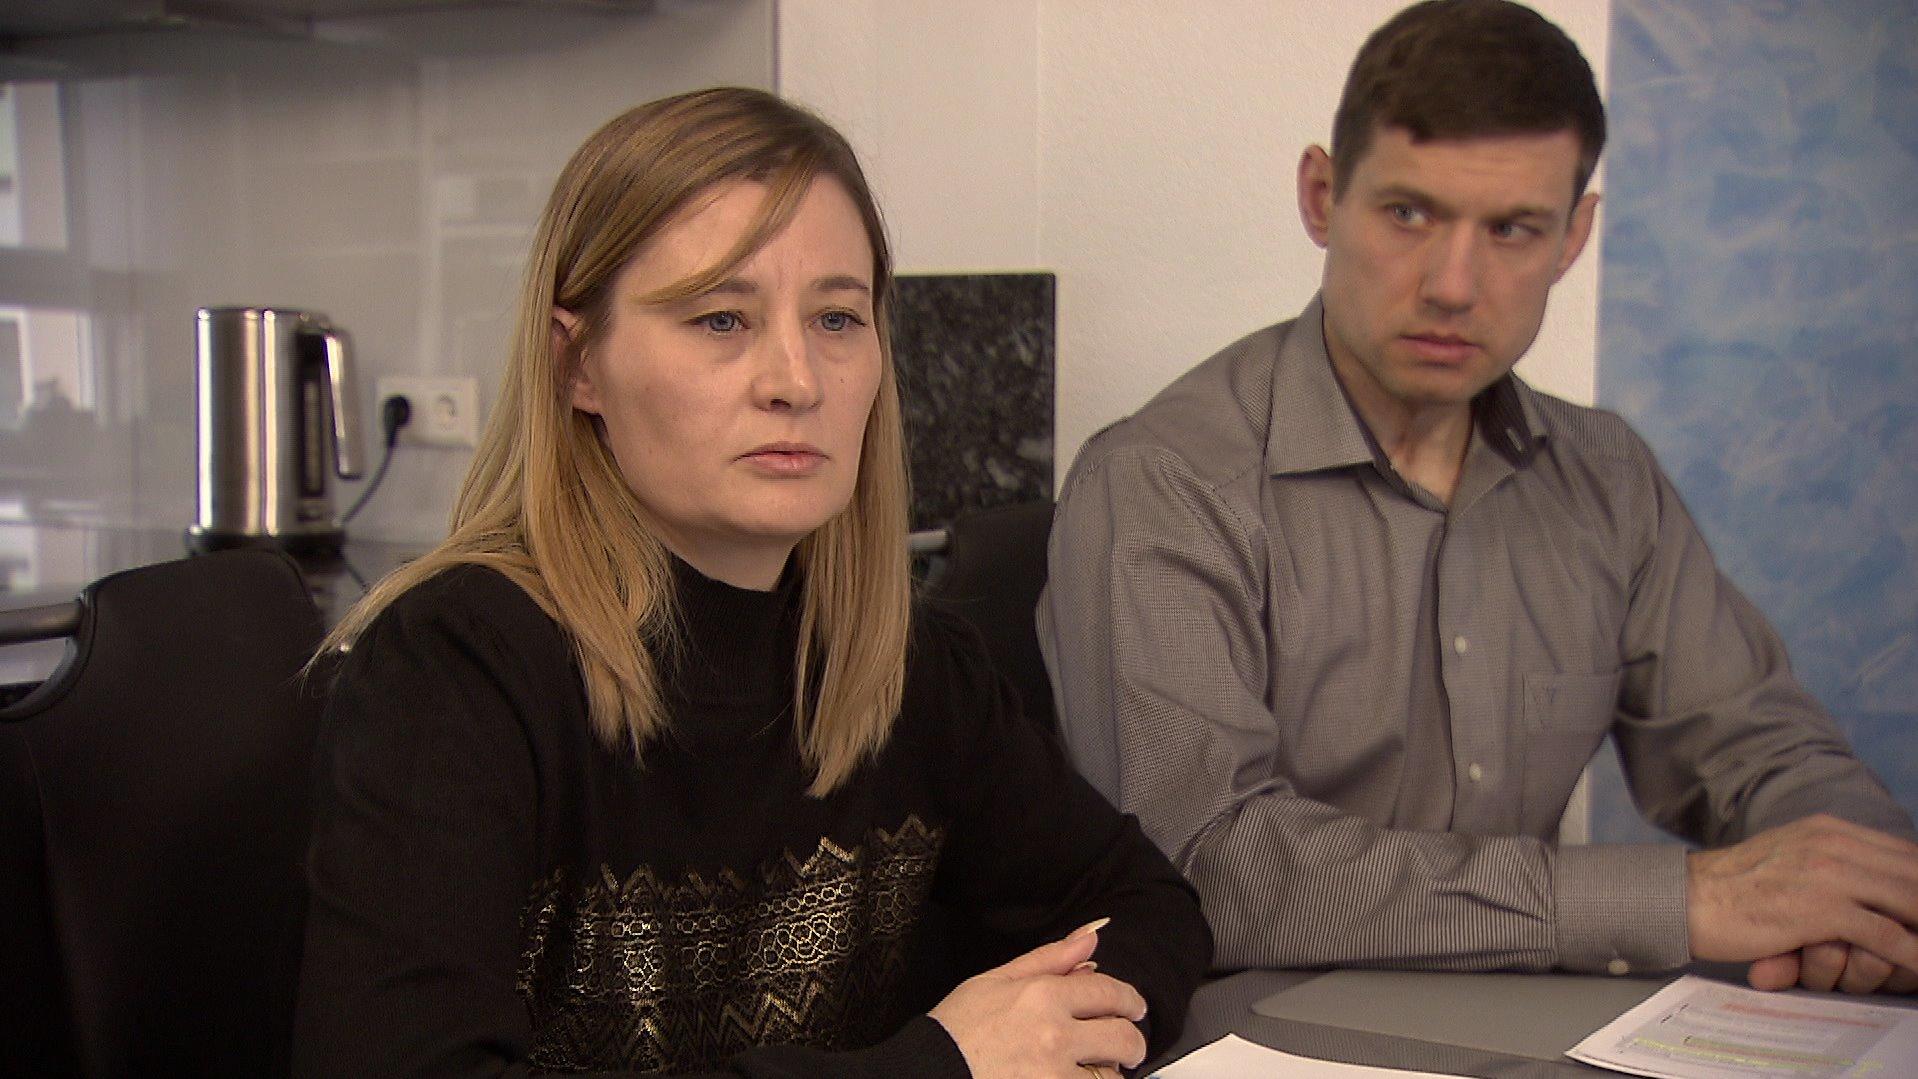 Natalie und Dimitri, Eltern der vermissten Jennifer aus Bühl